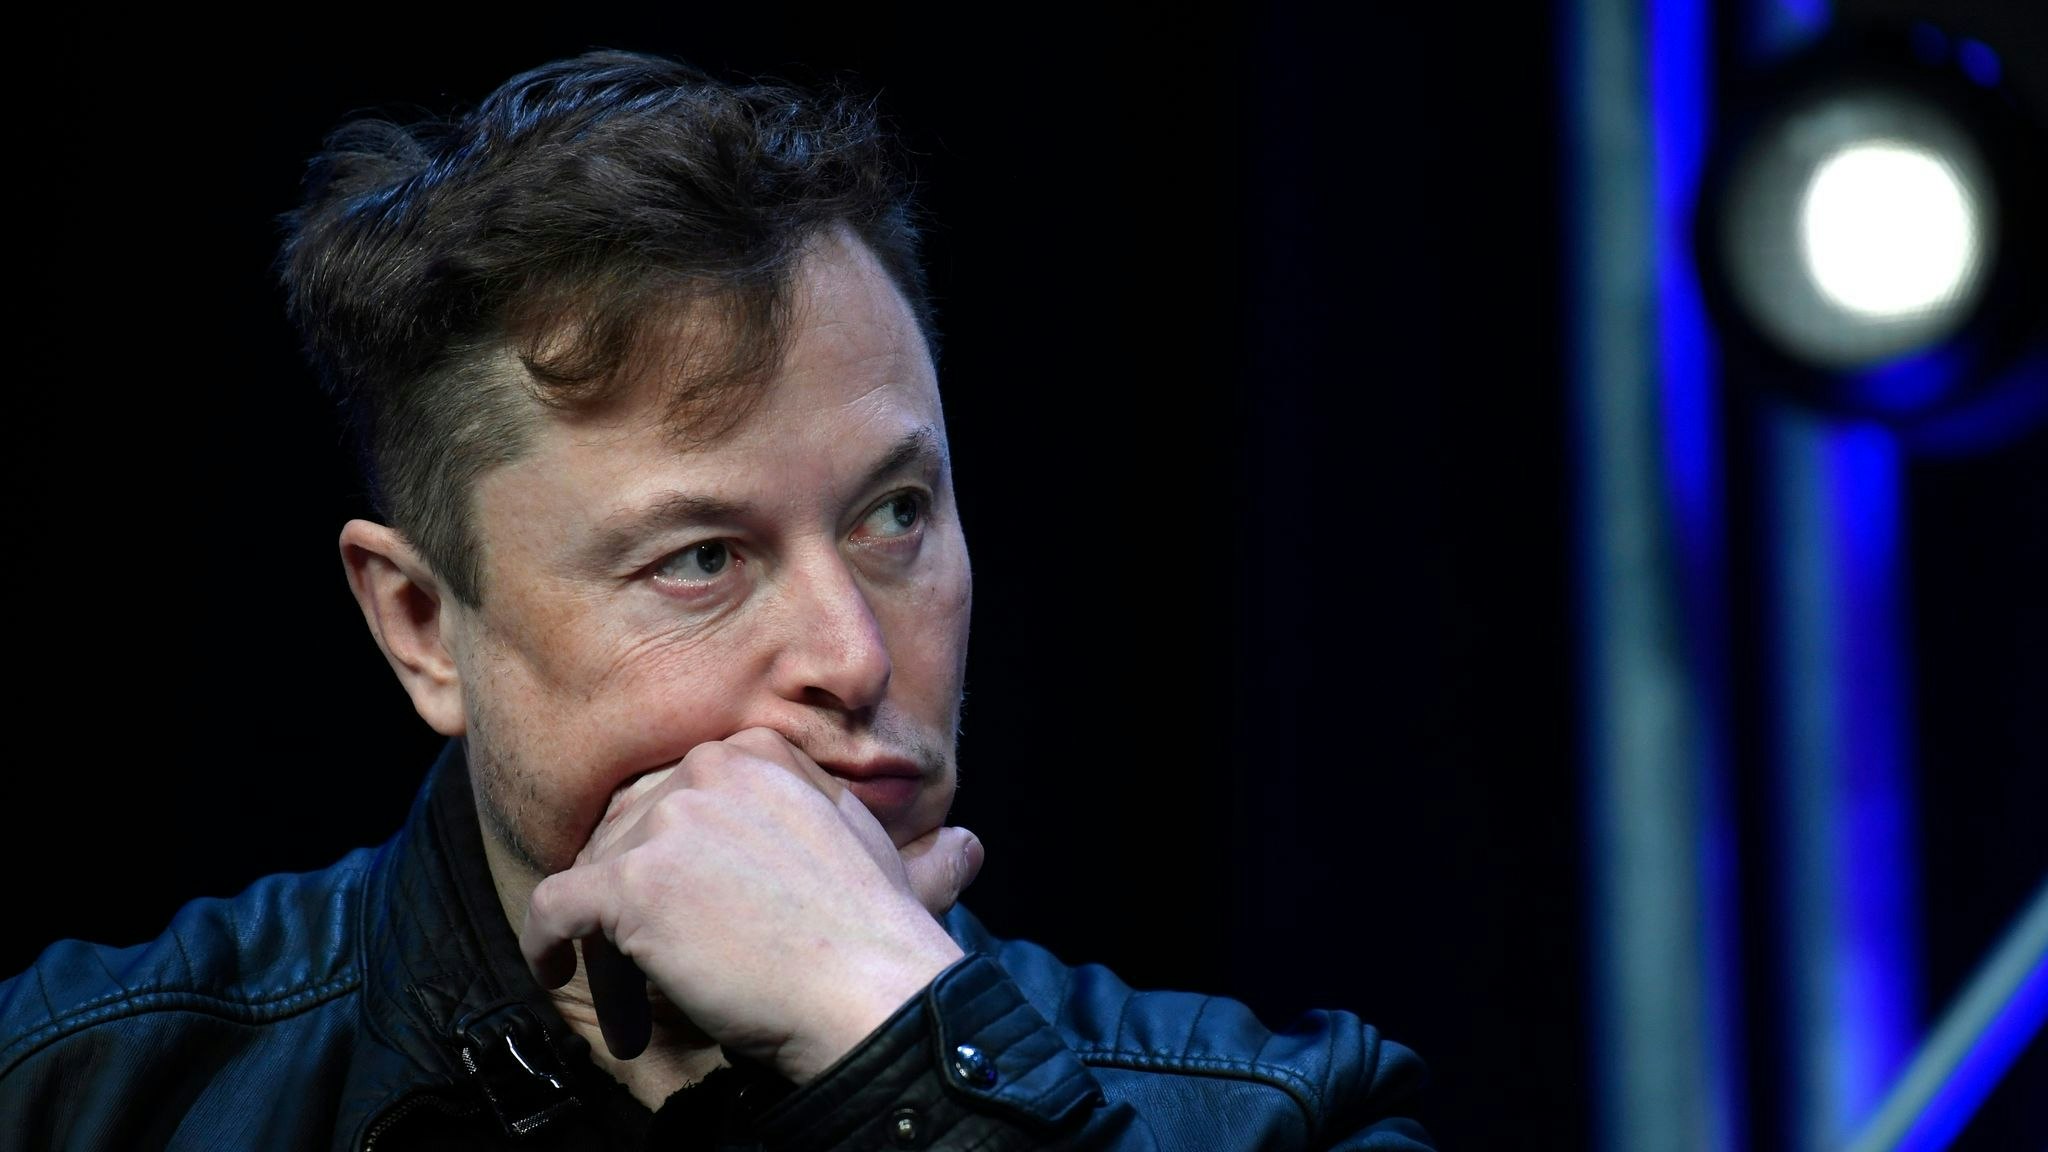 Seit der Übernahme durch Elon Musk wandern viele Menschen von Twitter ab. Nun durften seine Follower über seine Zukunft abstimmen. Foto: Susan Walsh / AP / dpa